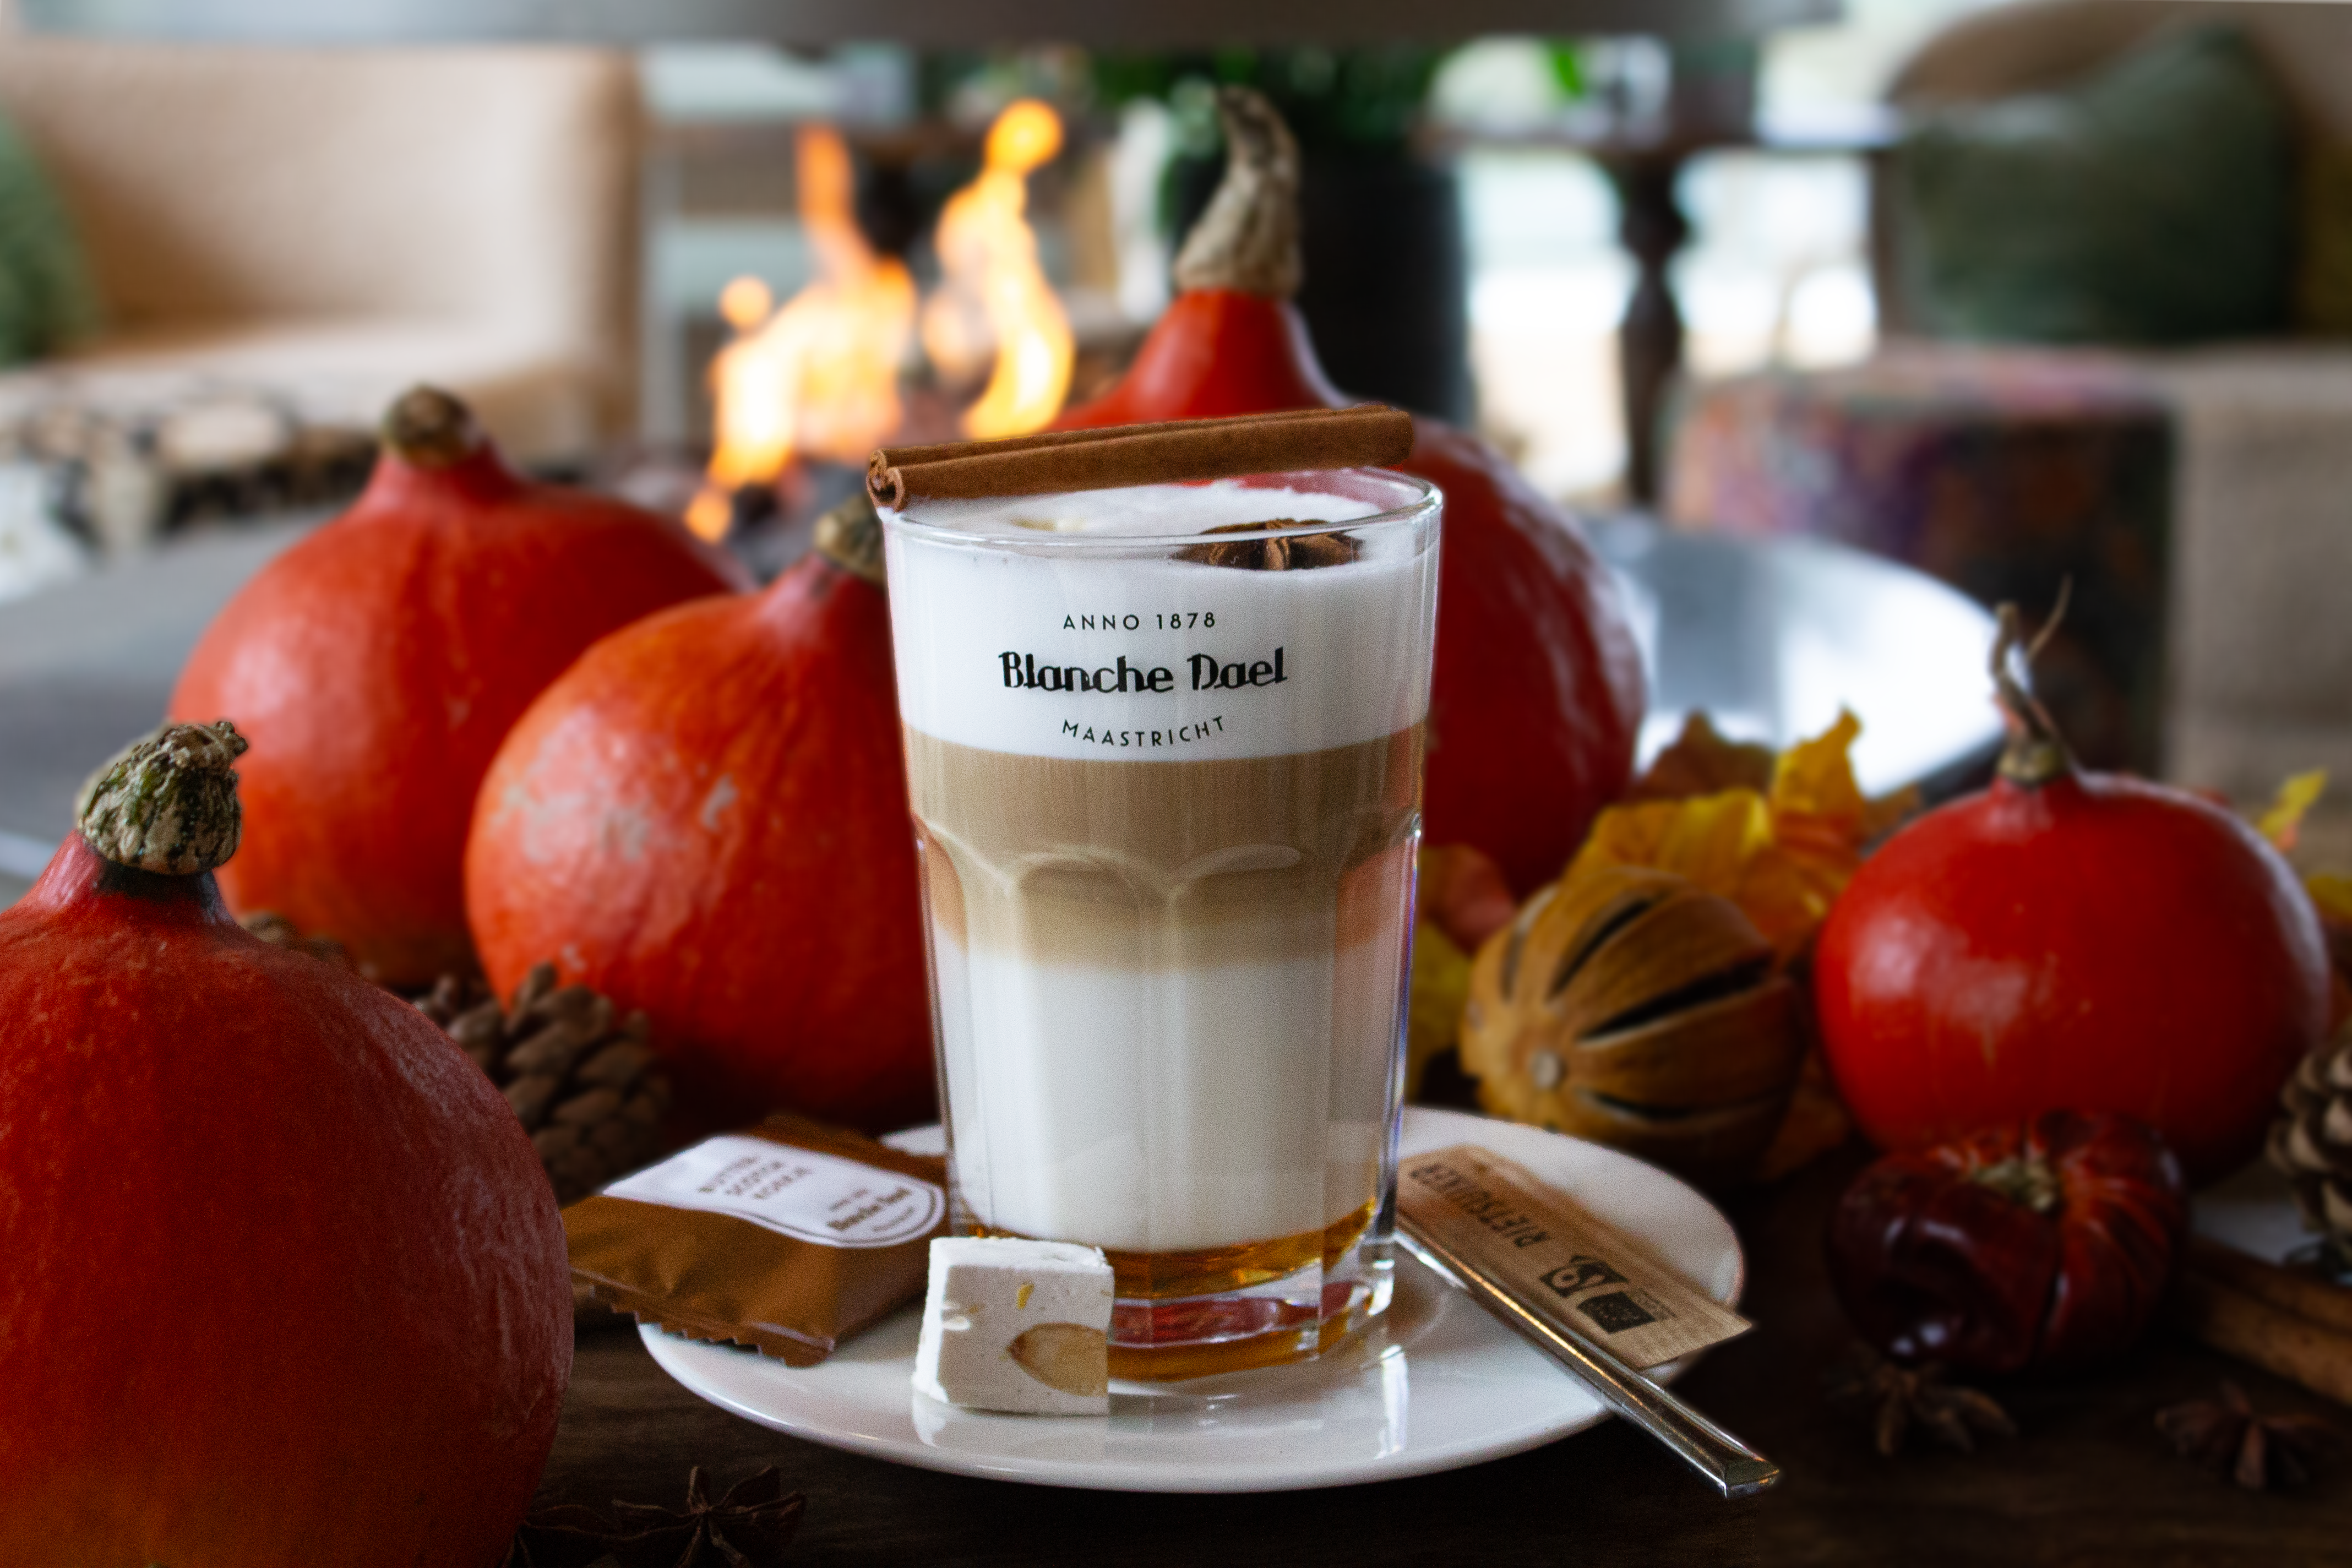 Pumpkin spice latte in wellness restaurant bij thermae 2000 met pompoenen op de achtergrond.